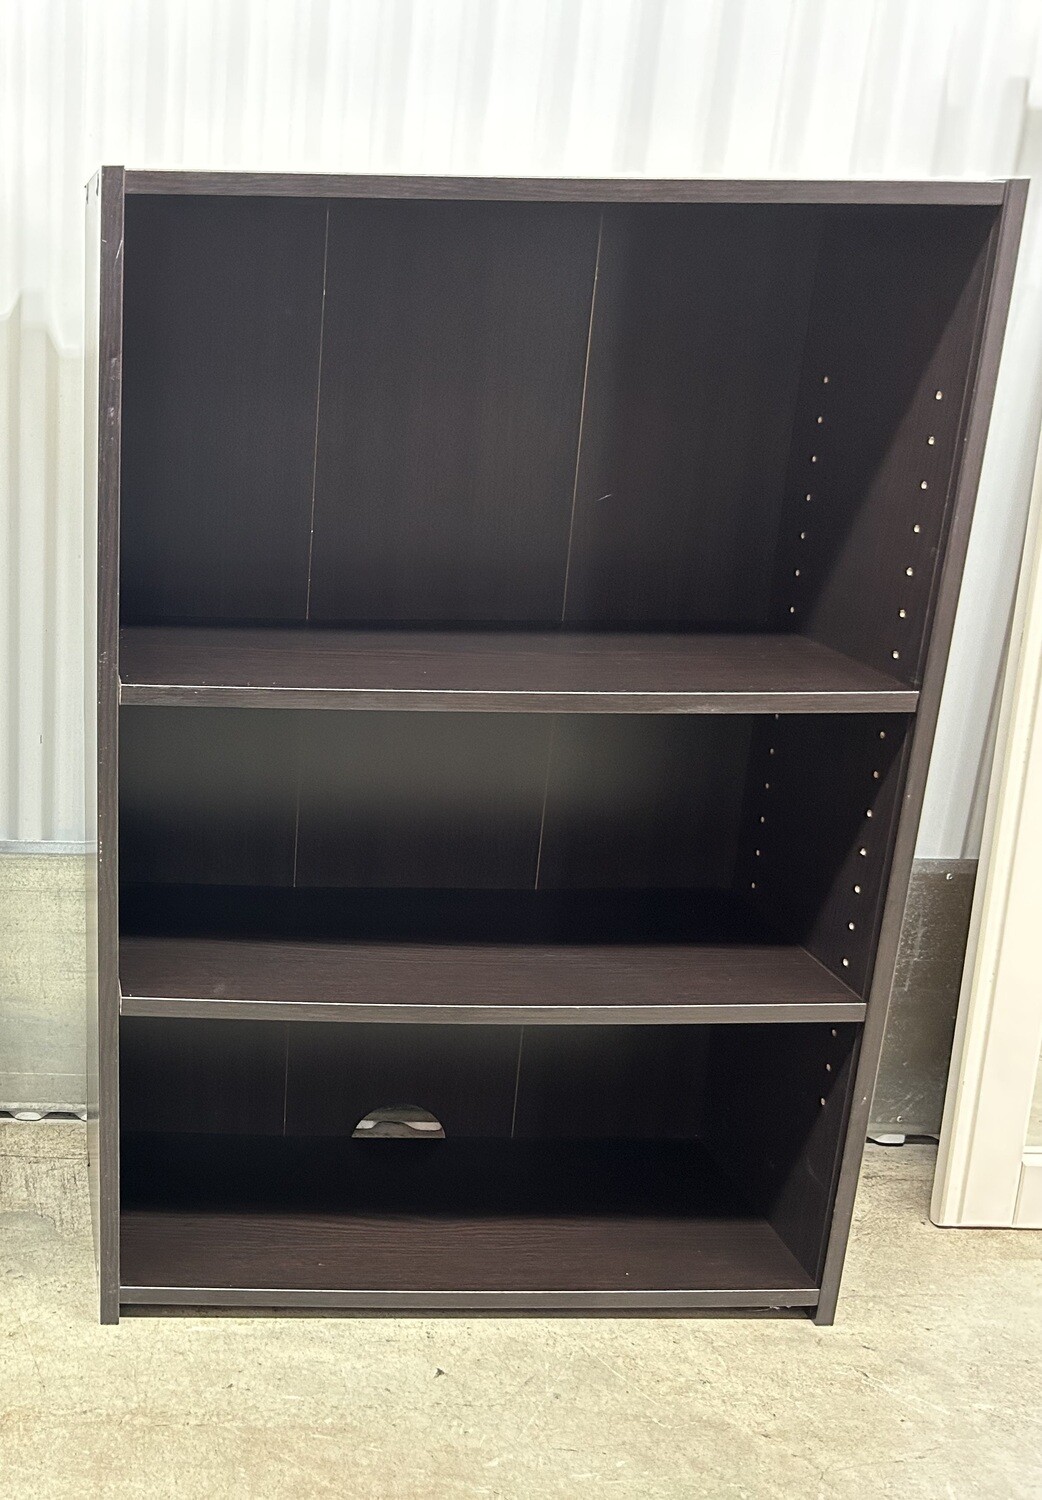 Black Bookcase, 2 shelves, looks new! #2214